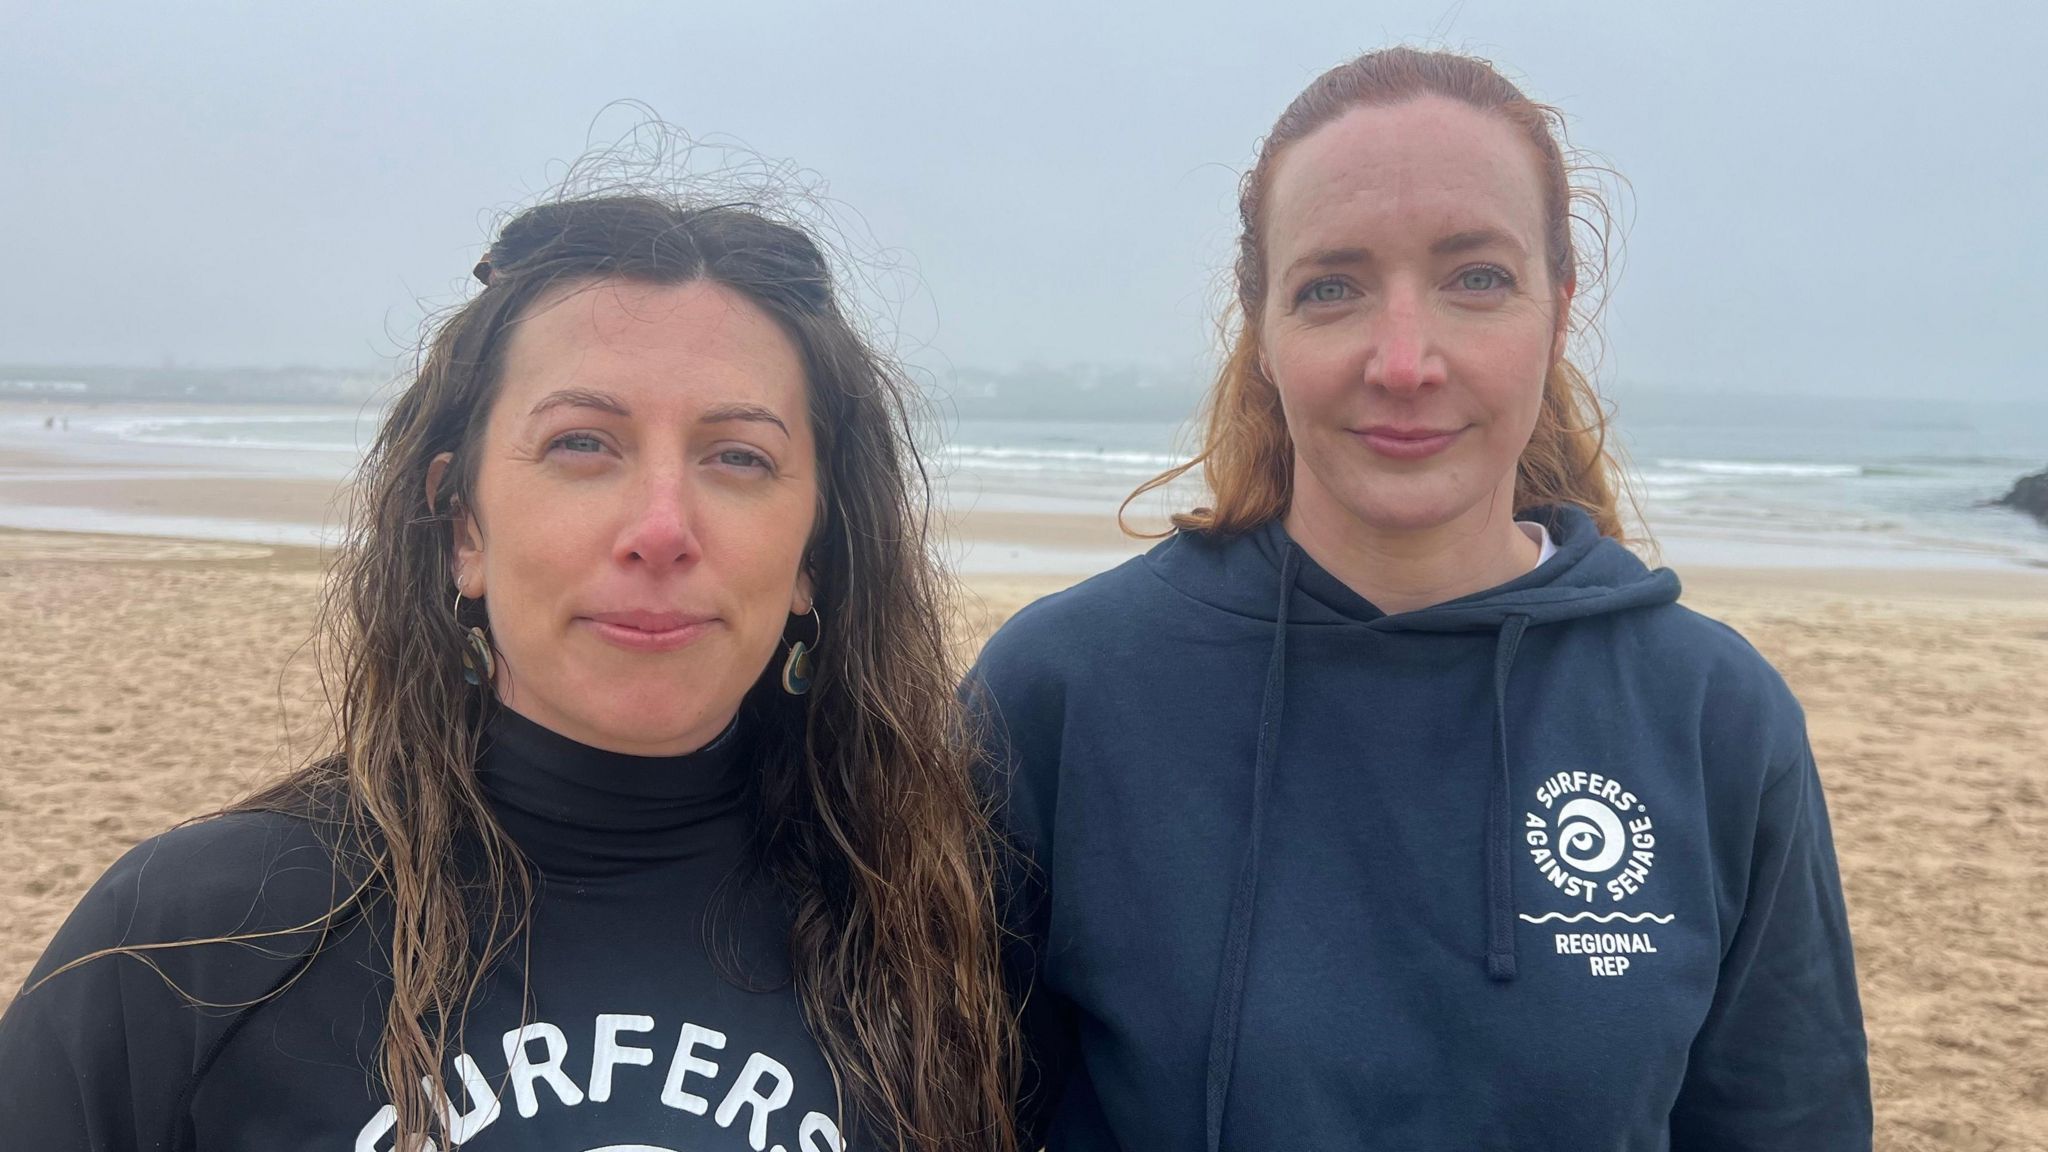 Two women on beach